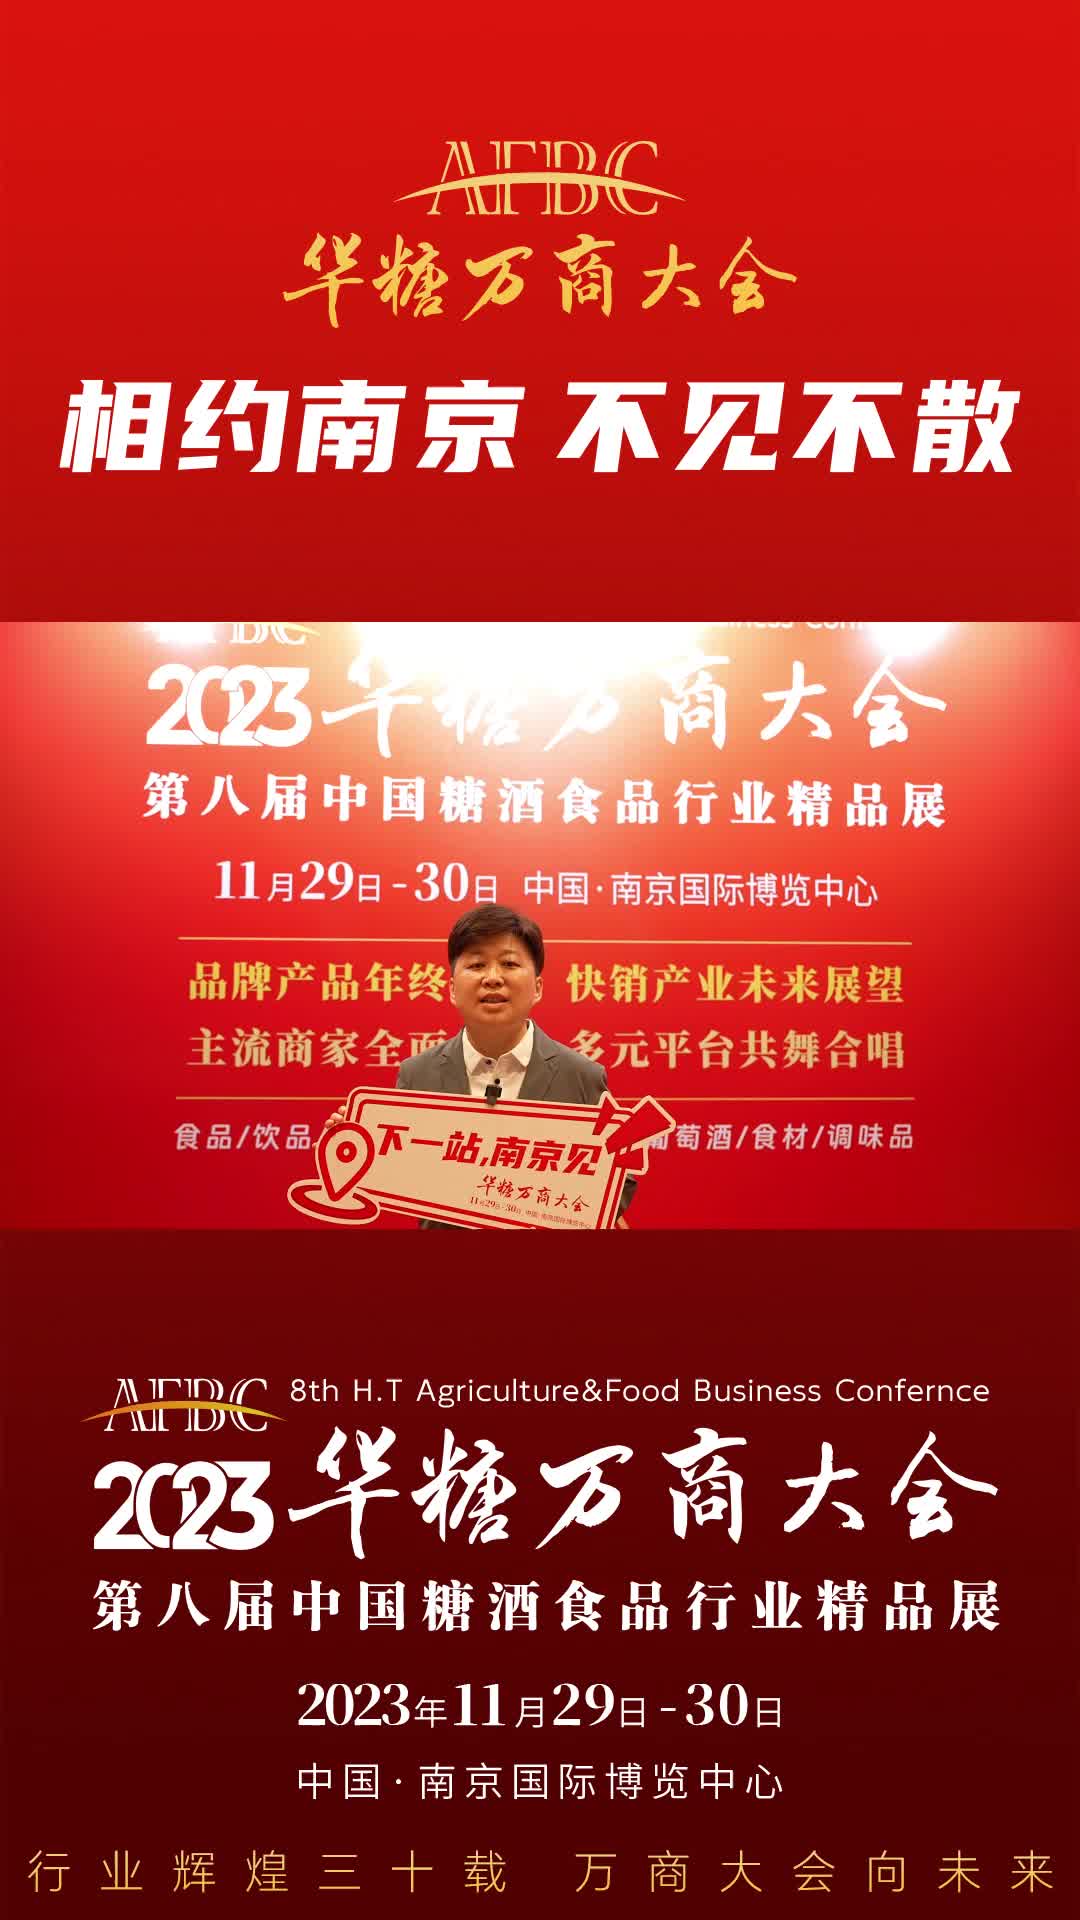 11月29日-30日，中国·南京，鸿运郎酒业（深圳）公司总经理朱静与您相约万商大会！